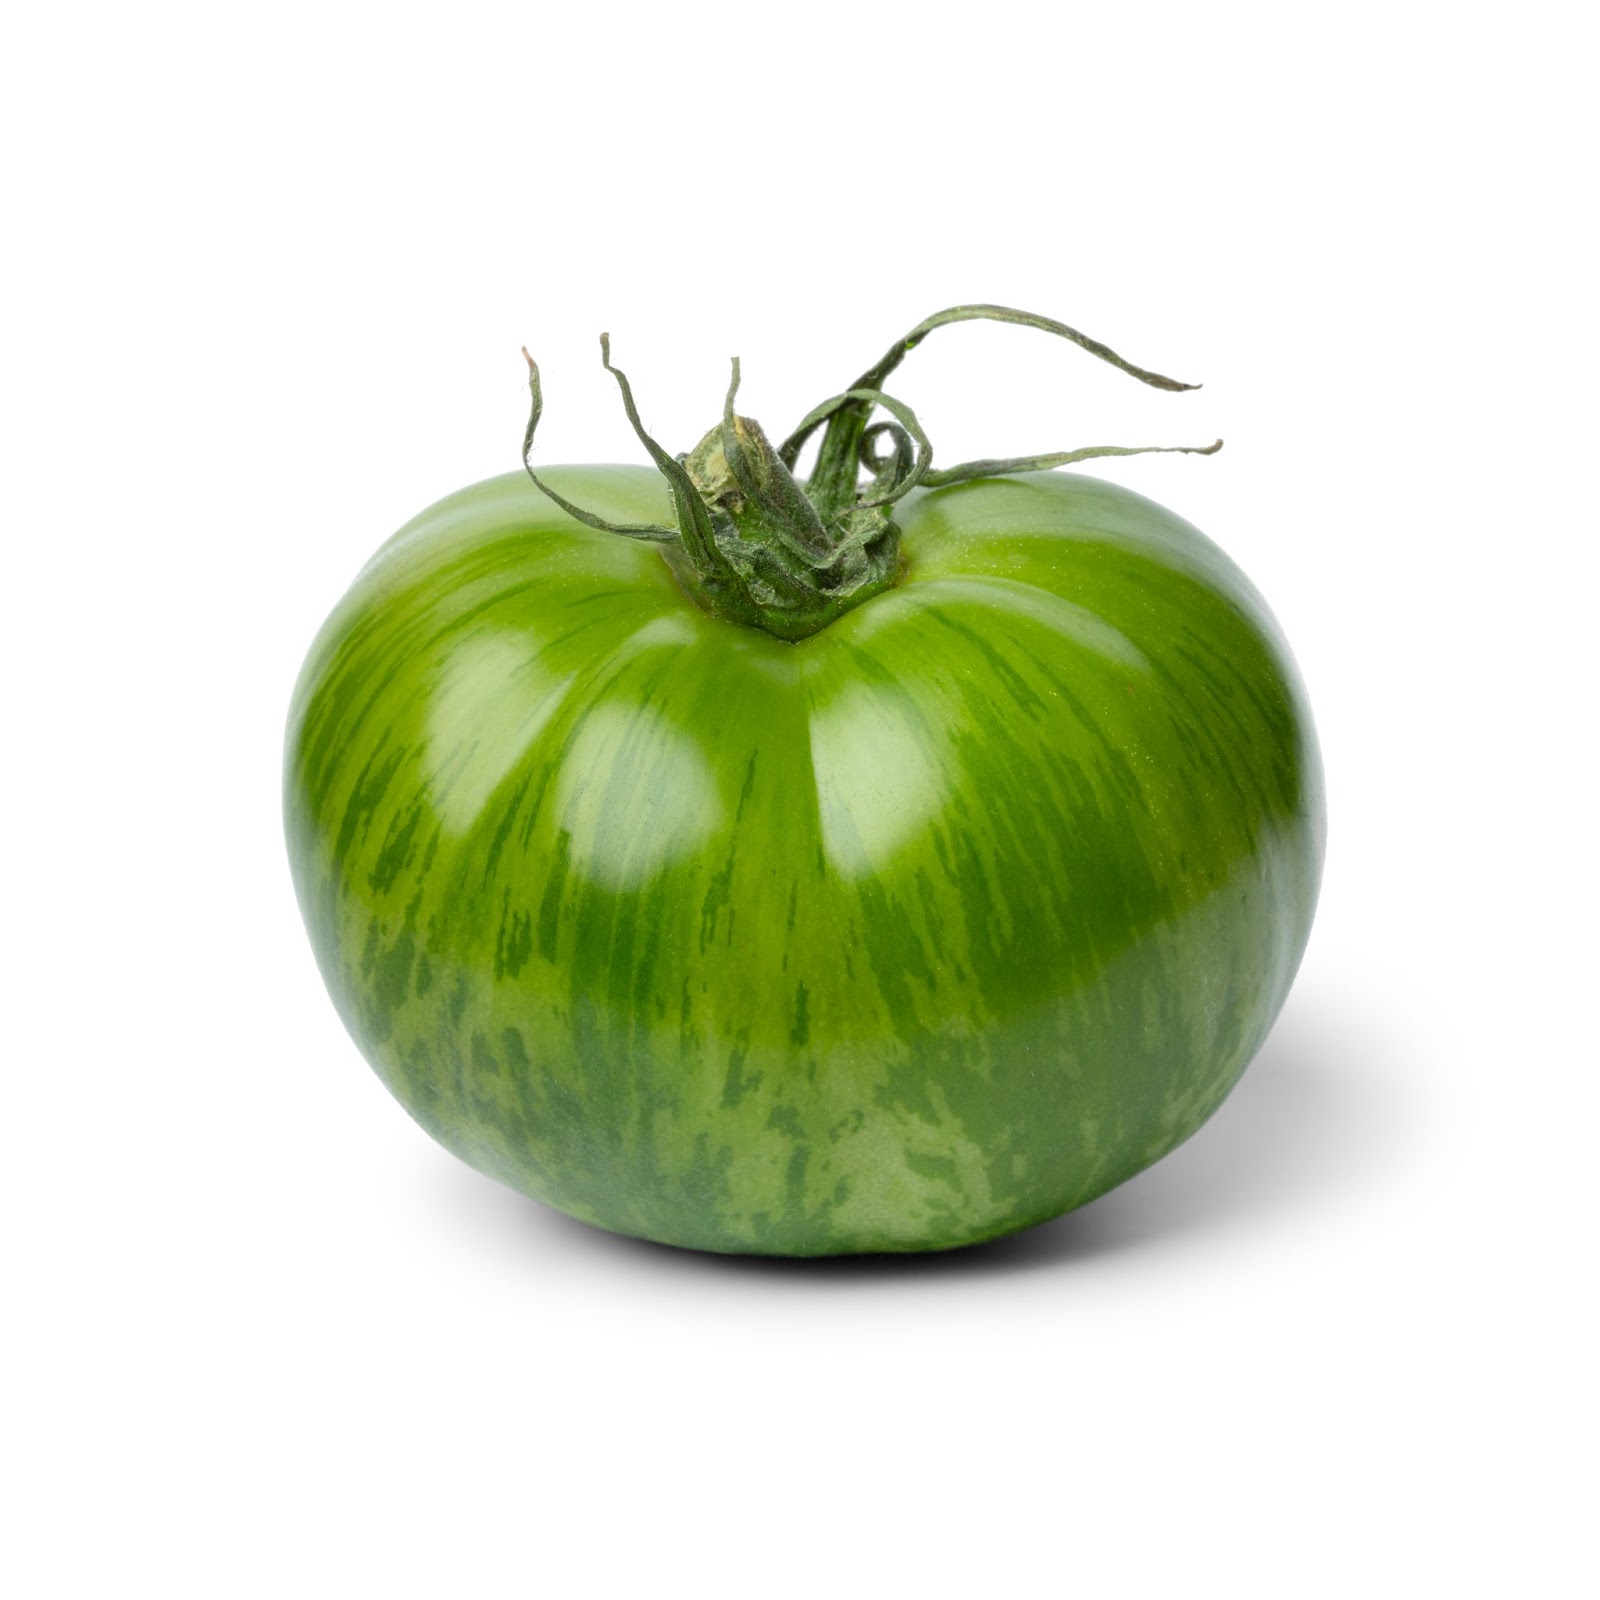 Comment bien faire pousser des tomates ? - Gamm vert